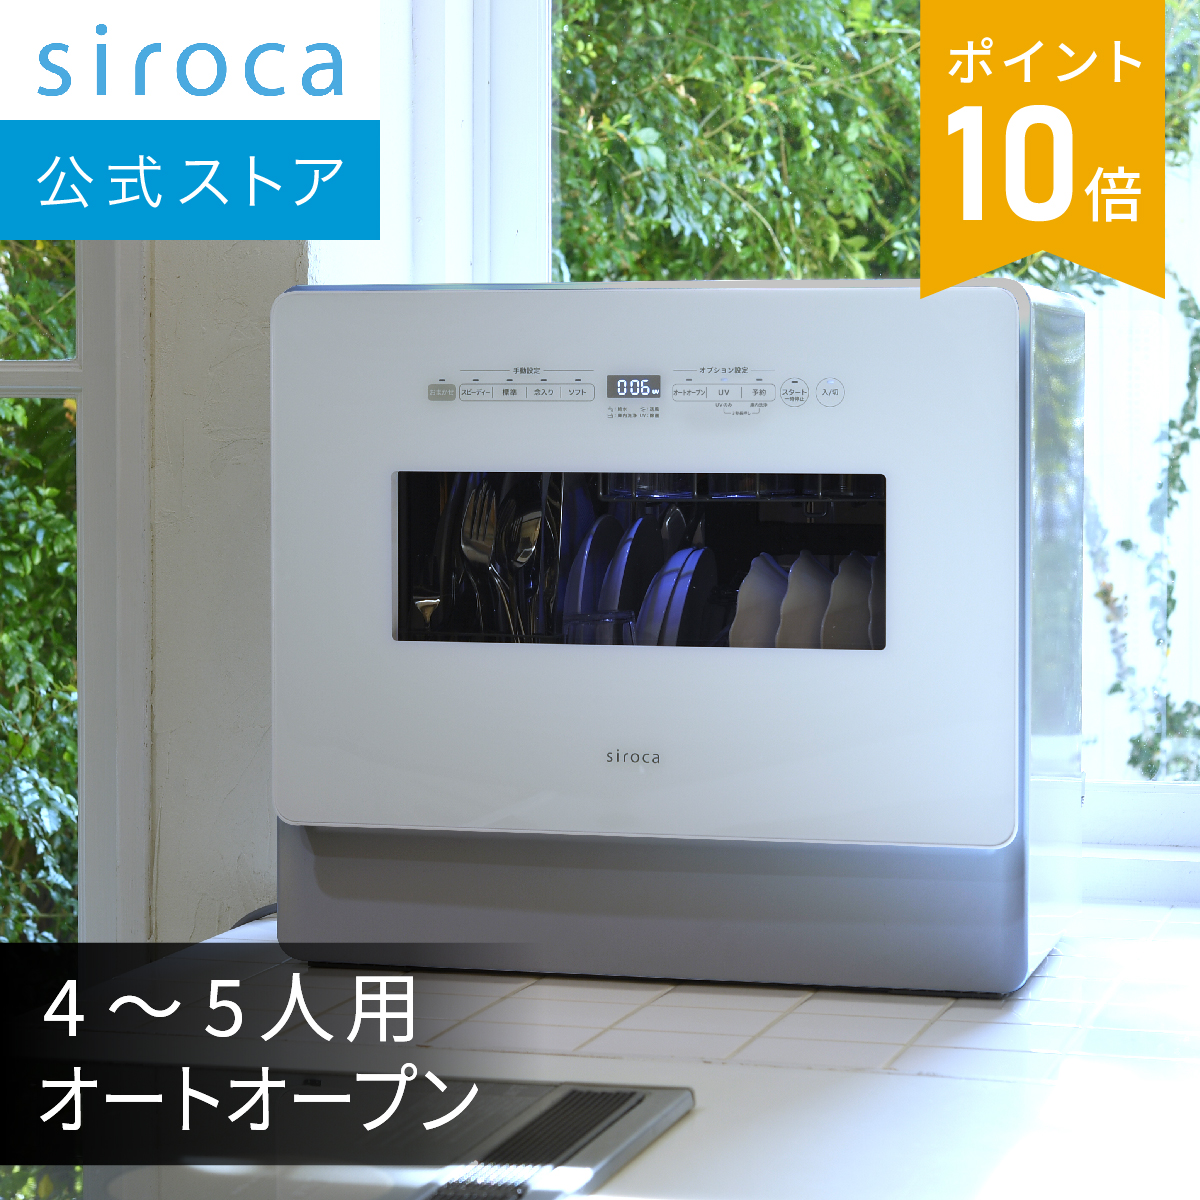 楽天市場シロカ公式ストア限定モデル食器洗い乾燥機